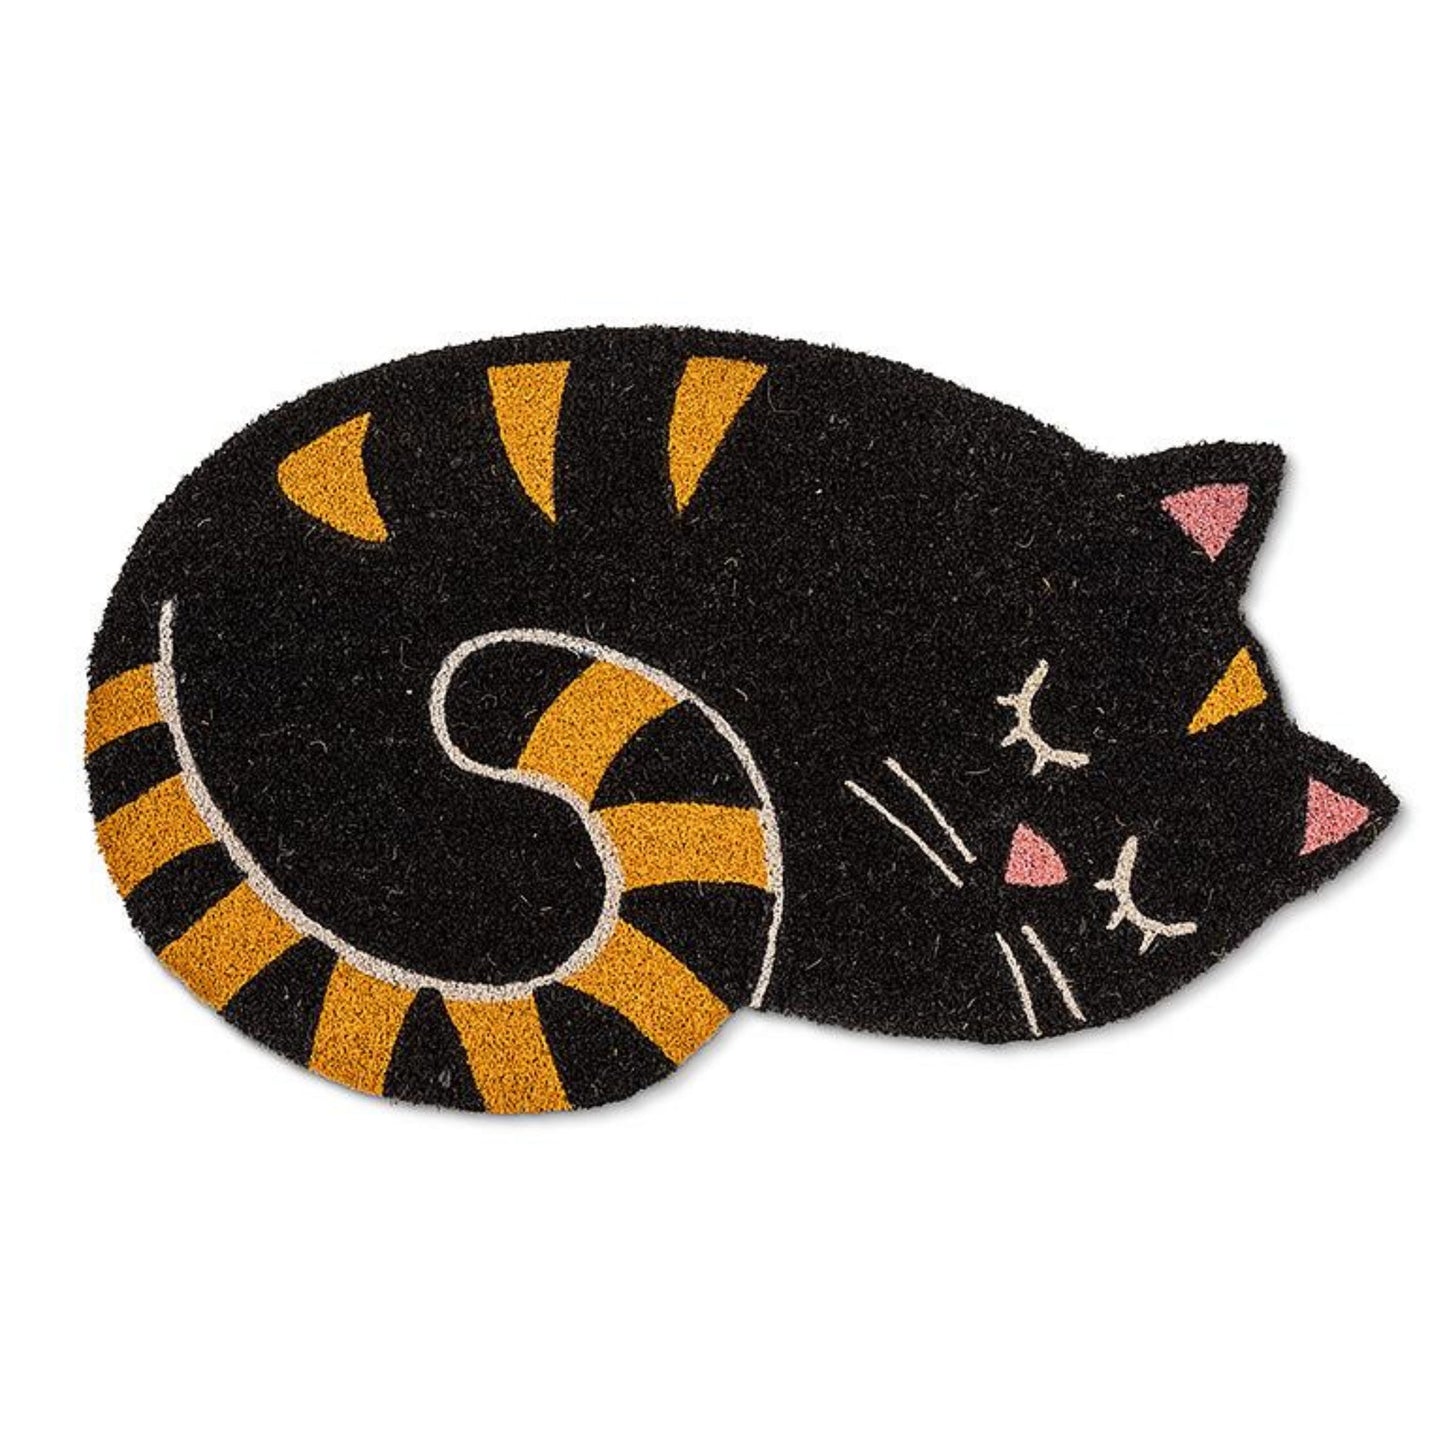 Doormat "Curly Cat" - Tiny Tiger Gift Shop